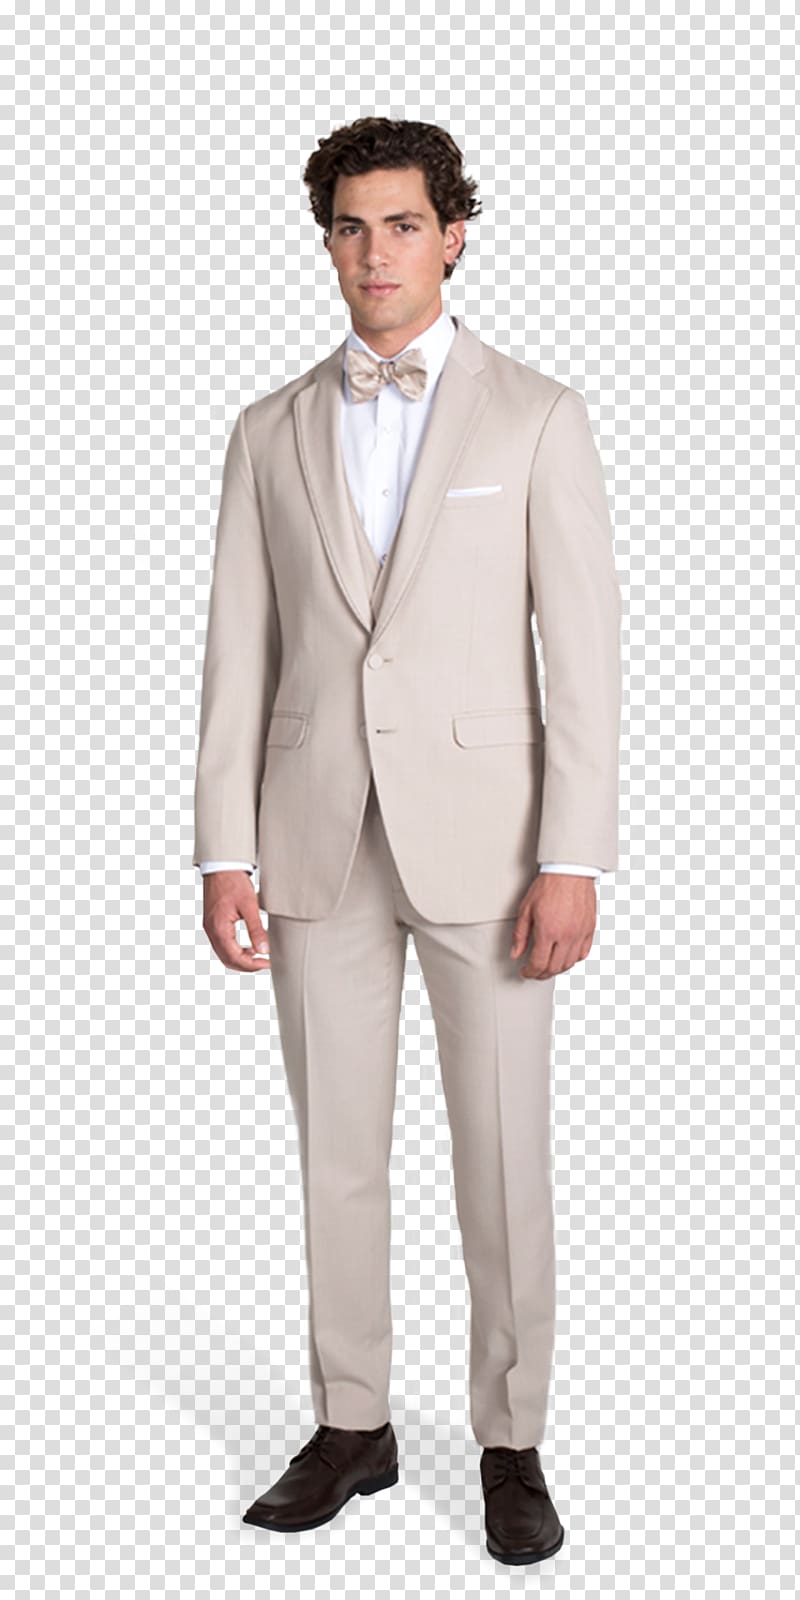 Dress code Suit Tuxedo Wedding dress Clothing, suit transparent background PNG clipart